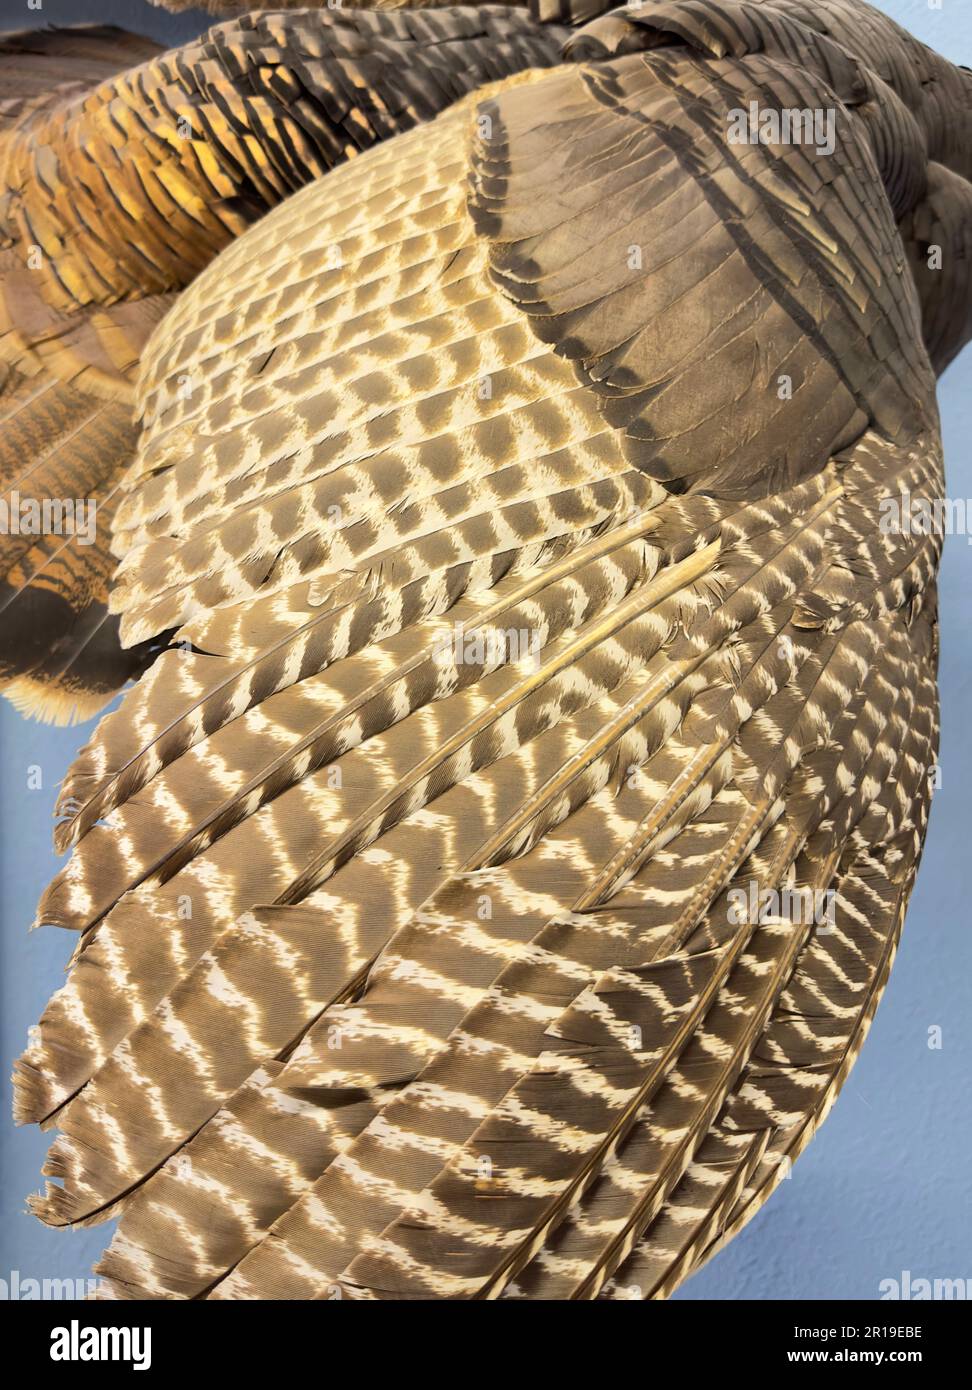 Gros plan les plumes de l'aile d'un vautour ou d'un oiseau à la mode forment un motif et une texture avec des ondulations Havane et jaune qui montrent comment elles sont espacées et adaptées. Banque D'Images